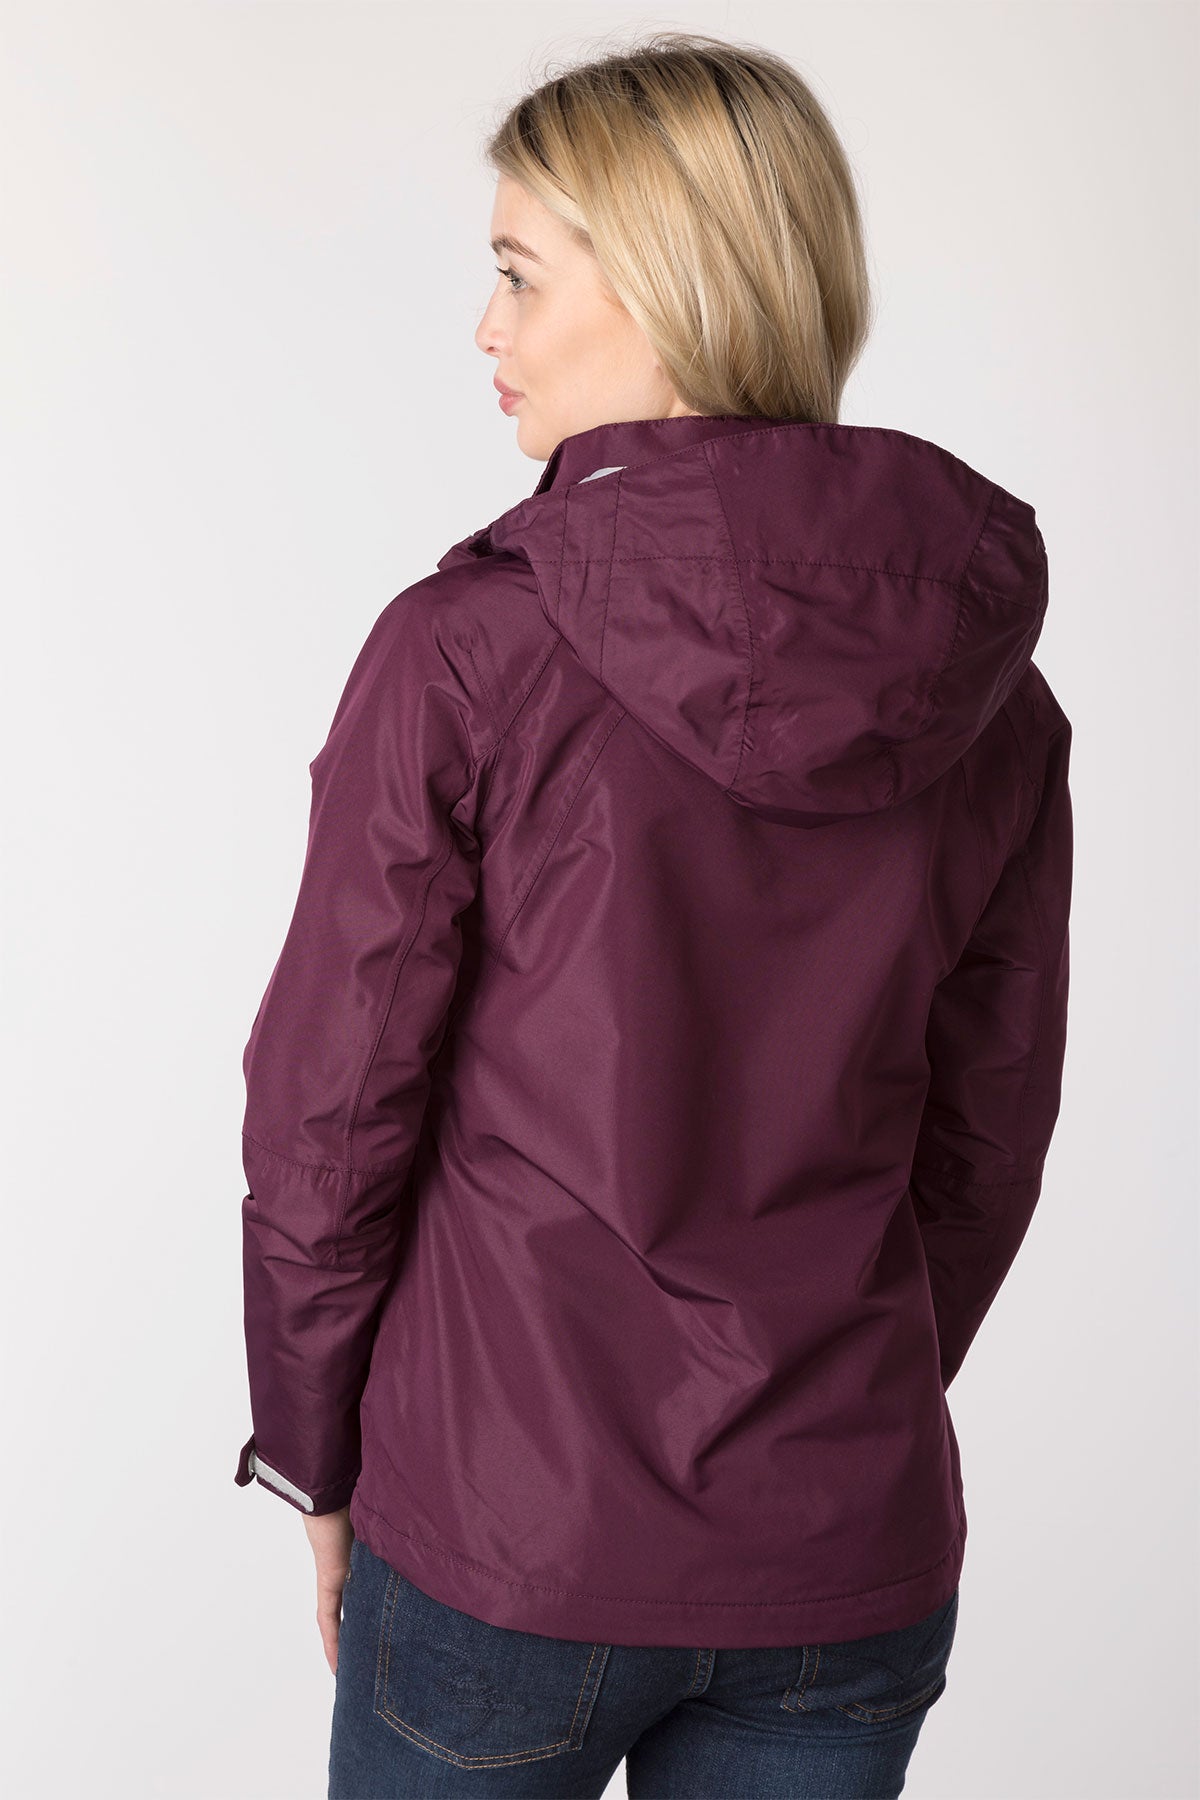 Ladies Country Outdoor Waterproof Jacket UK | Rydale